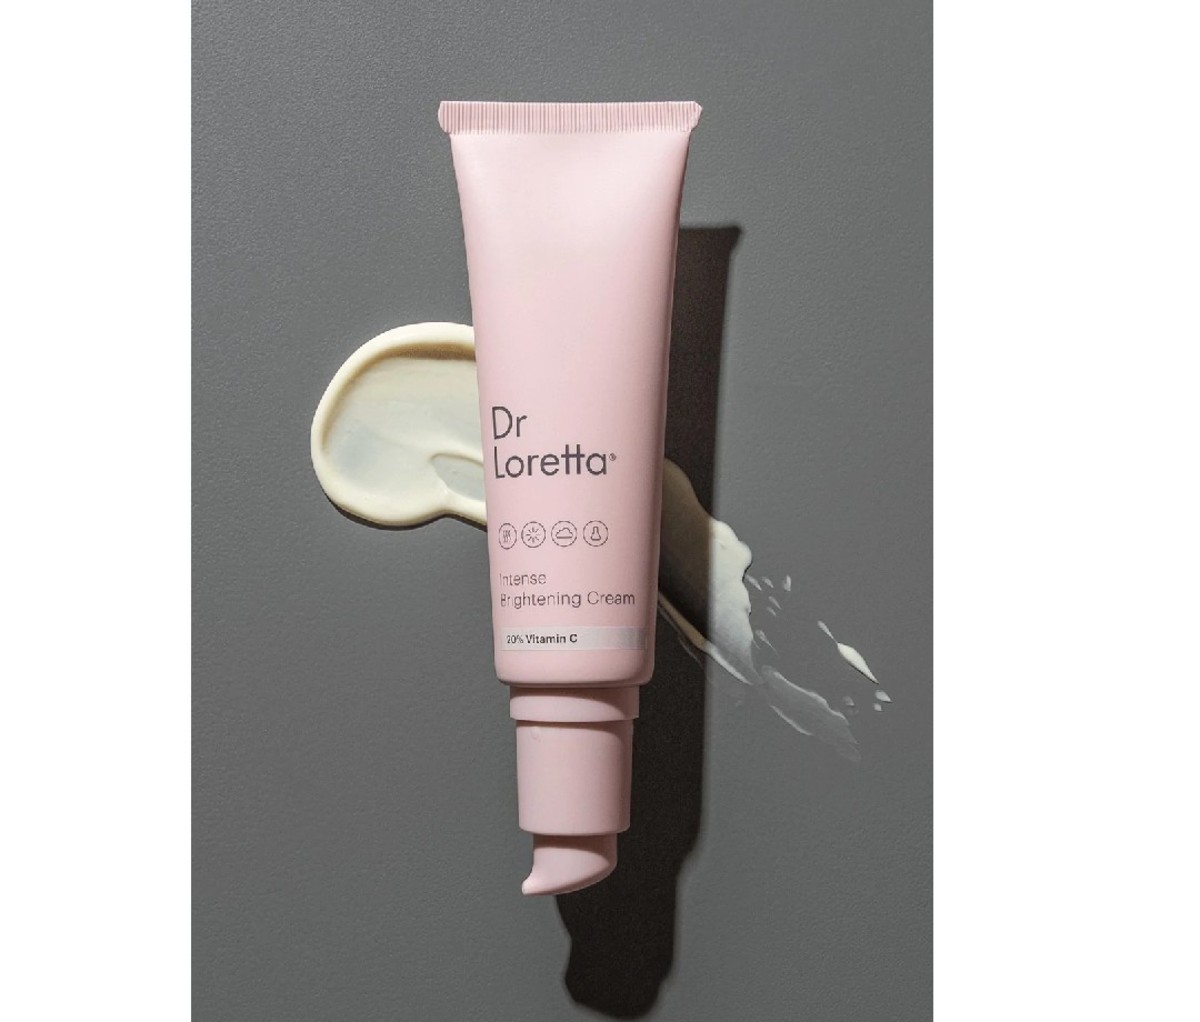 Pink tube of Dr. Loretta 20% Vitamin C brightening cream